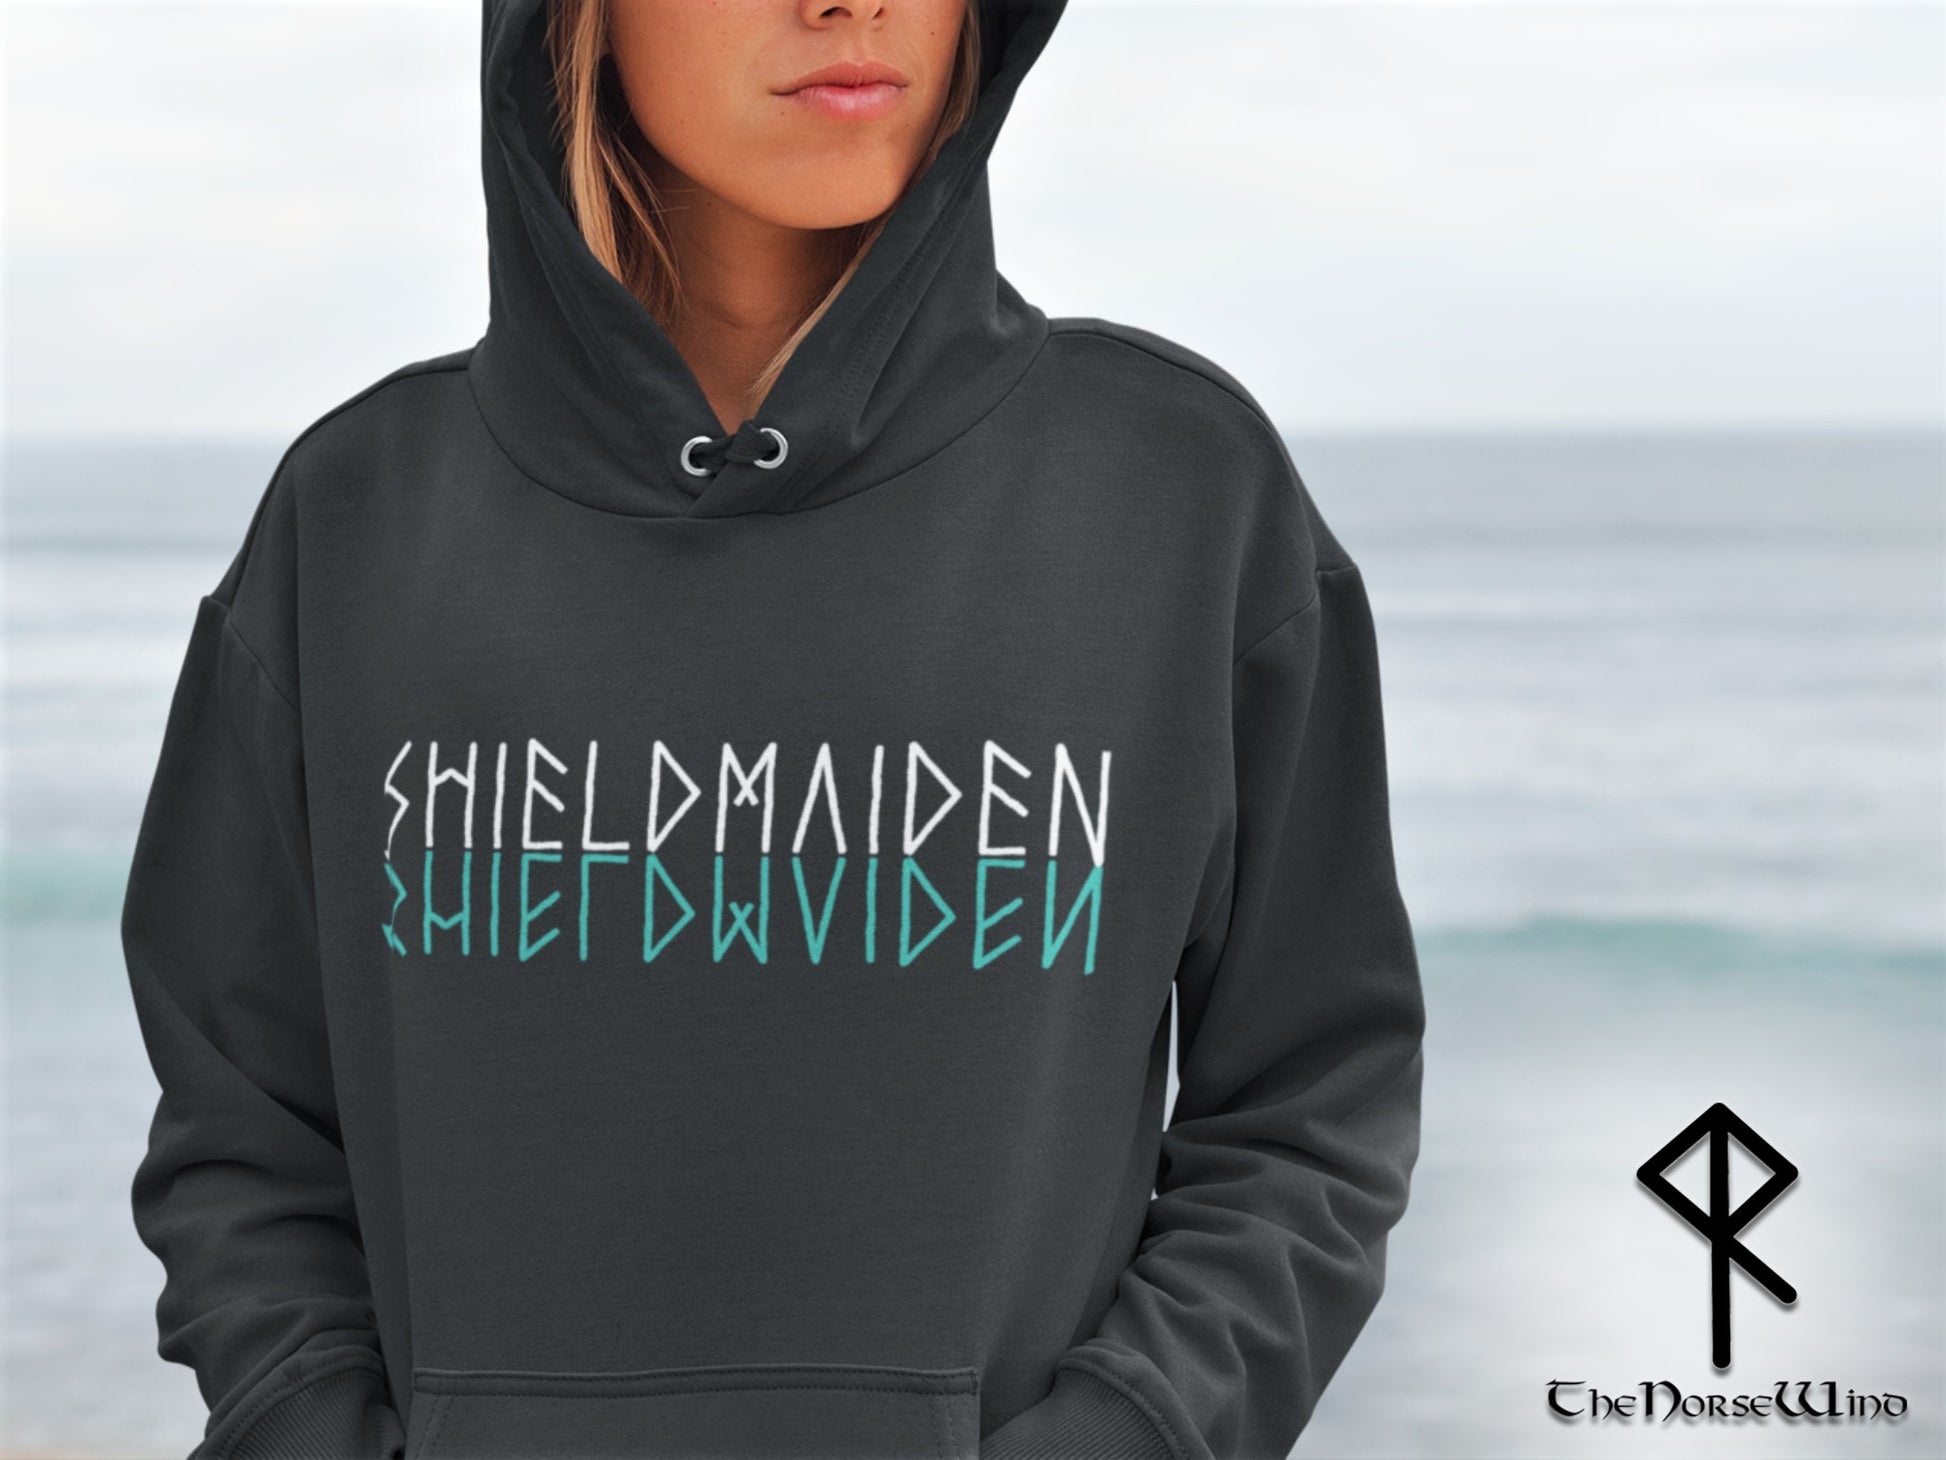  vikings viking fenrir shieldmaiden Lagertha shield maiden  Sweatshirt : Clothing, Shoes & Jewelry